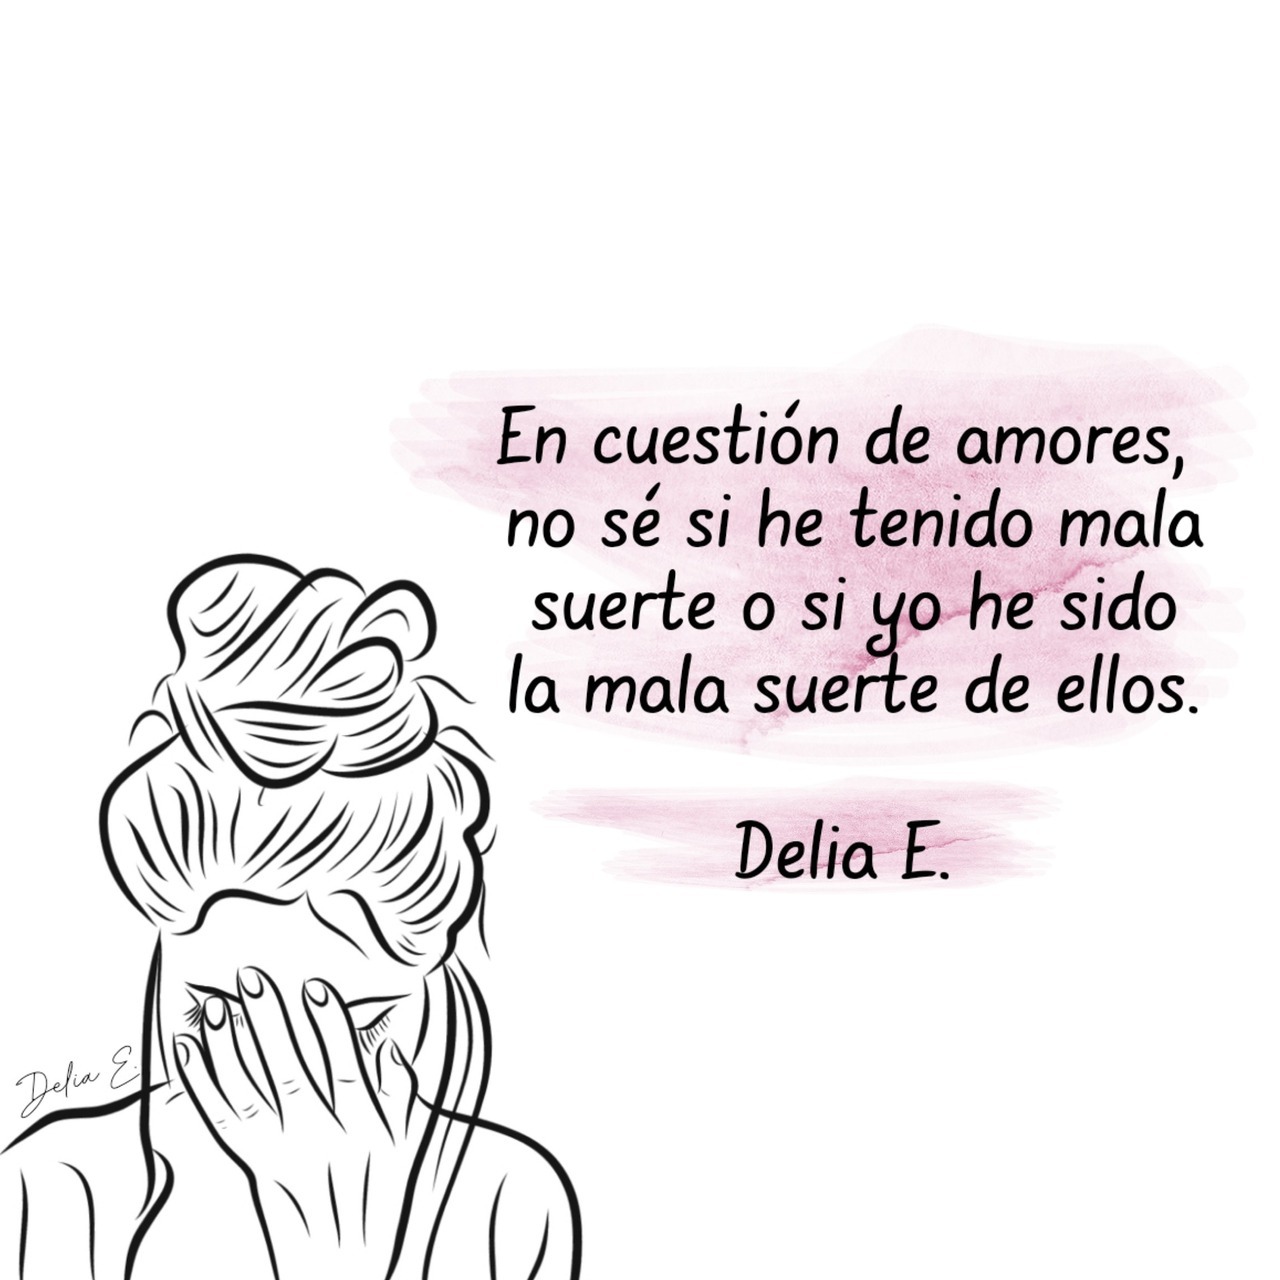 Delia E.